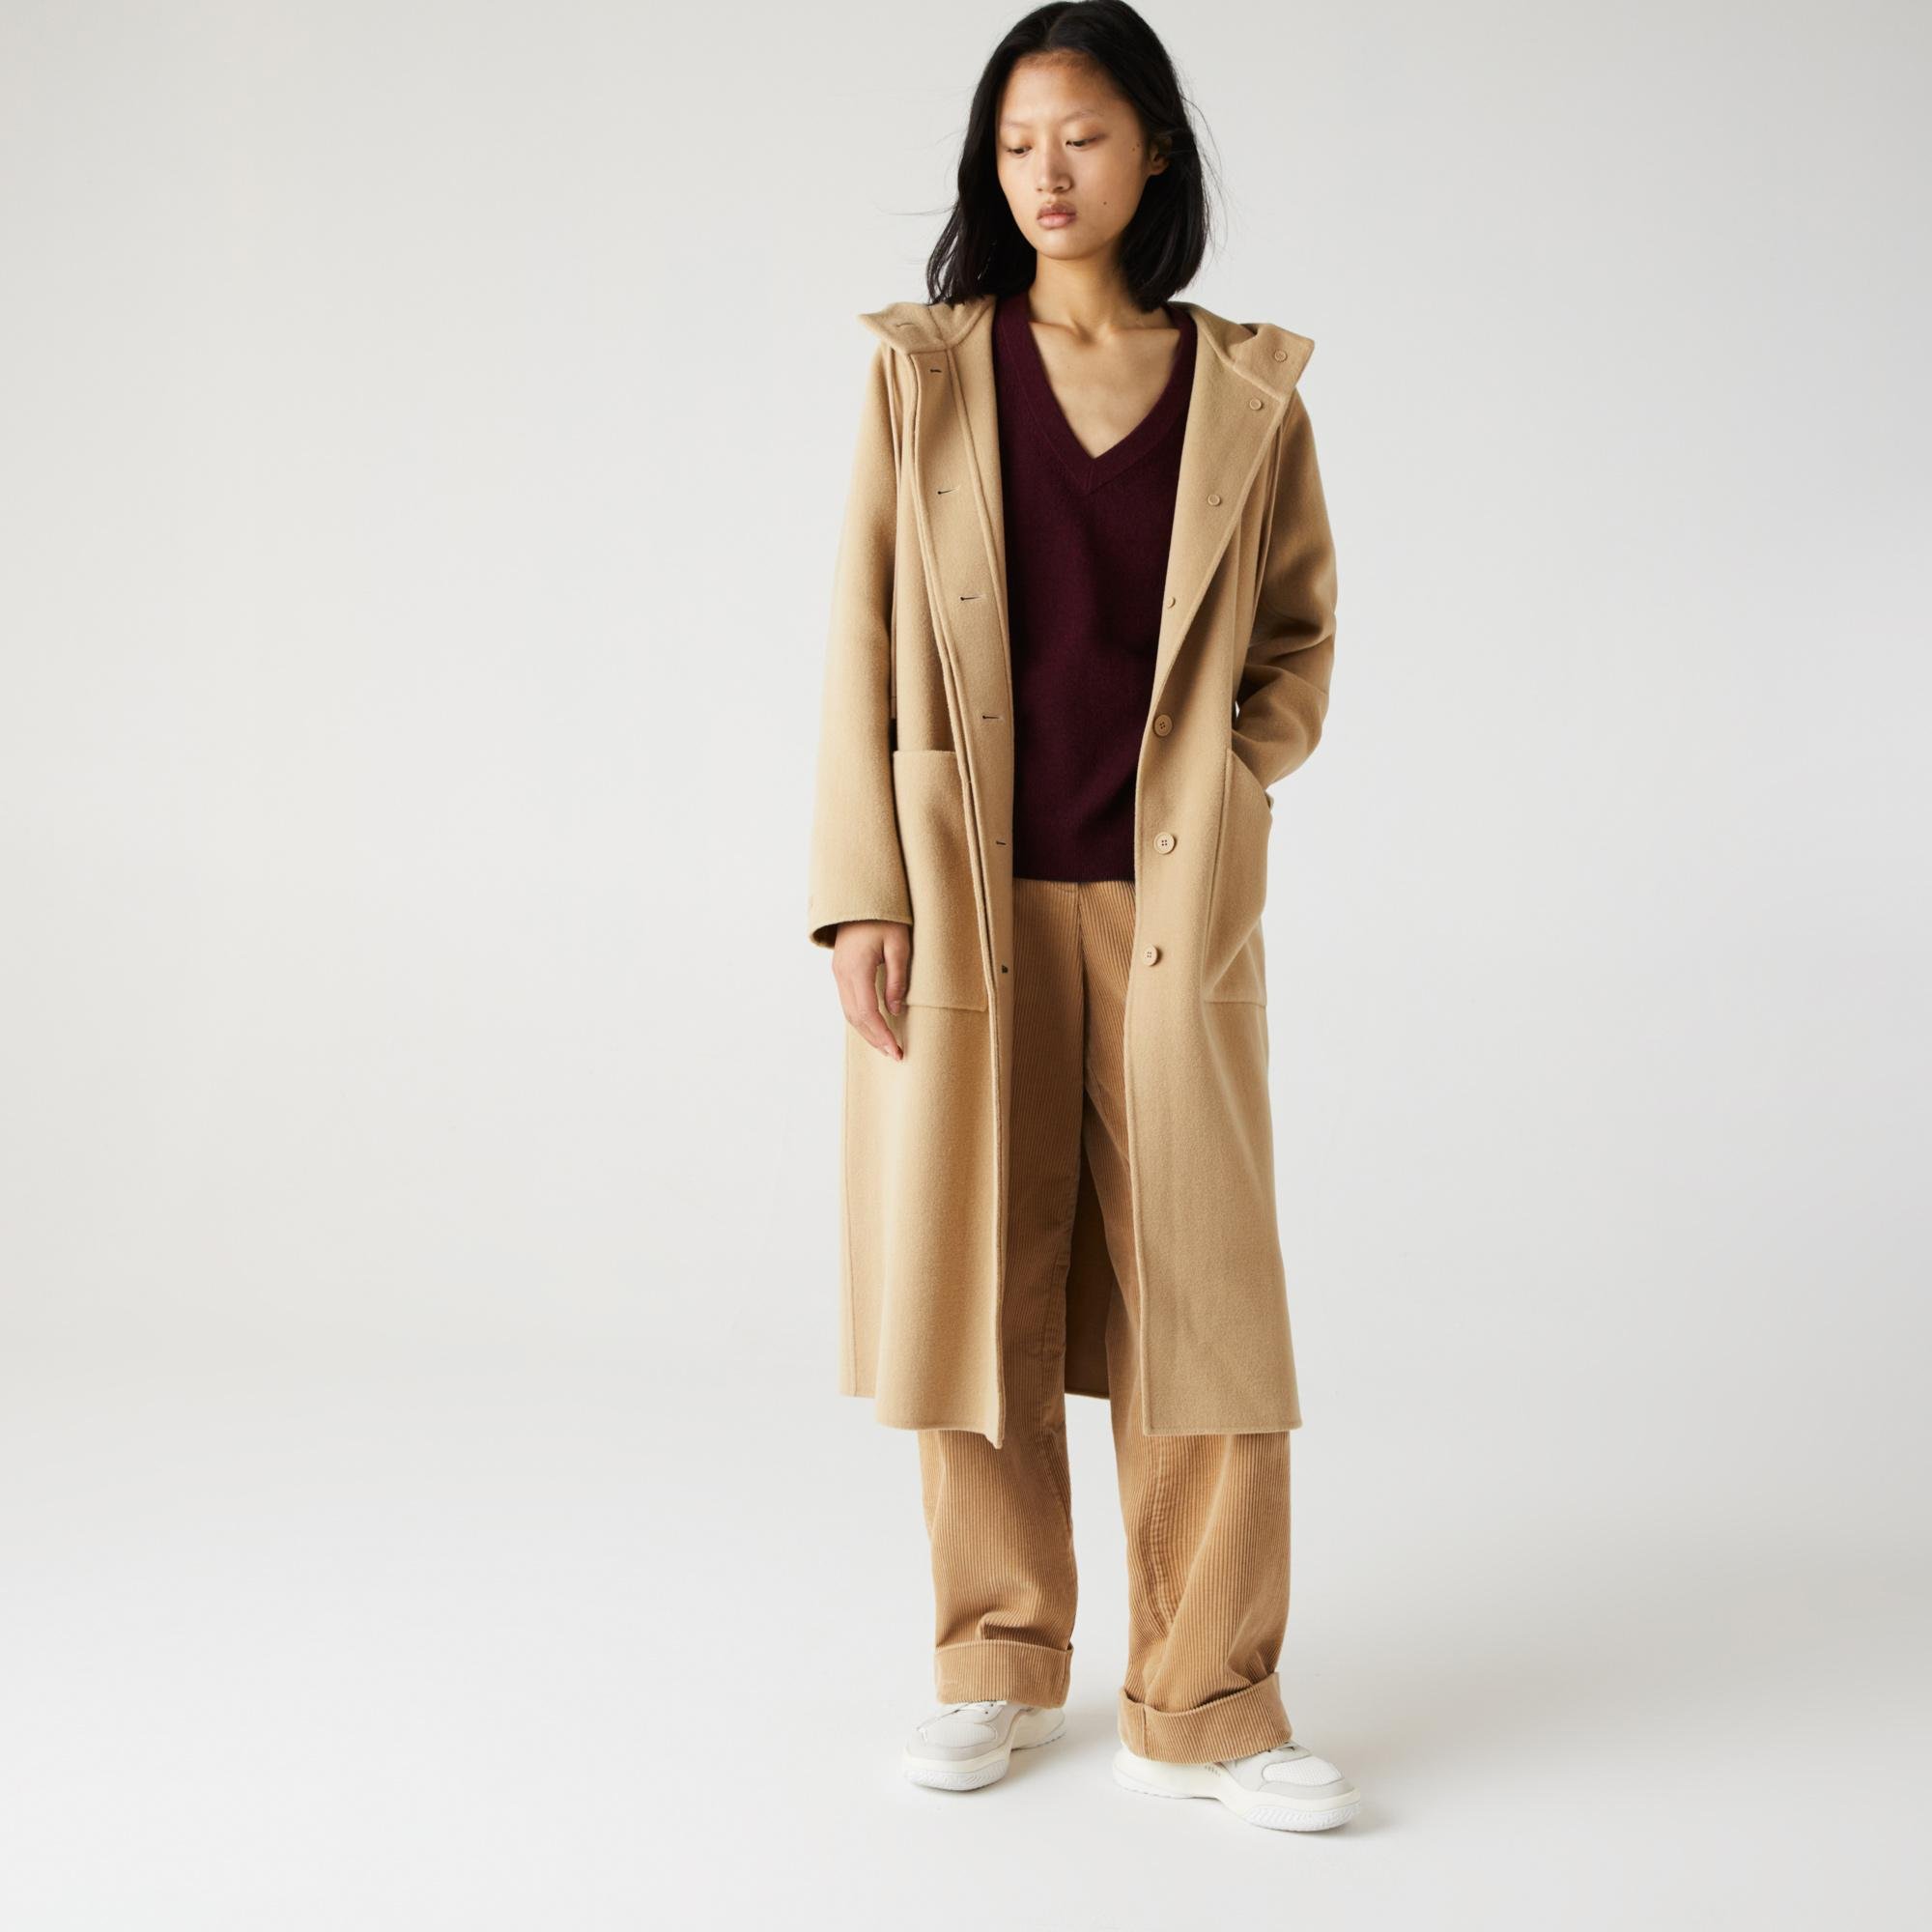 Lacoste Women's Hooded Zippered Long Wool Blend Coat